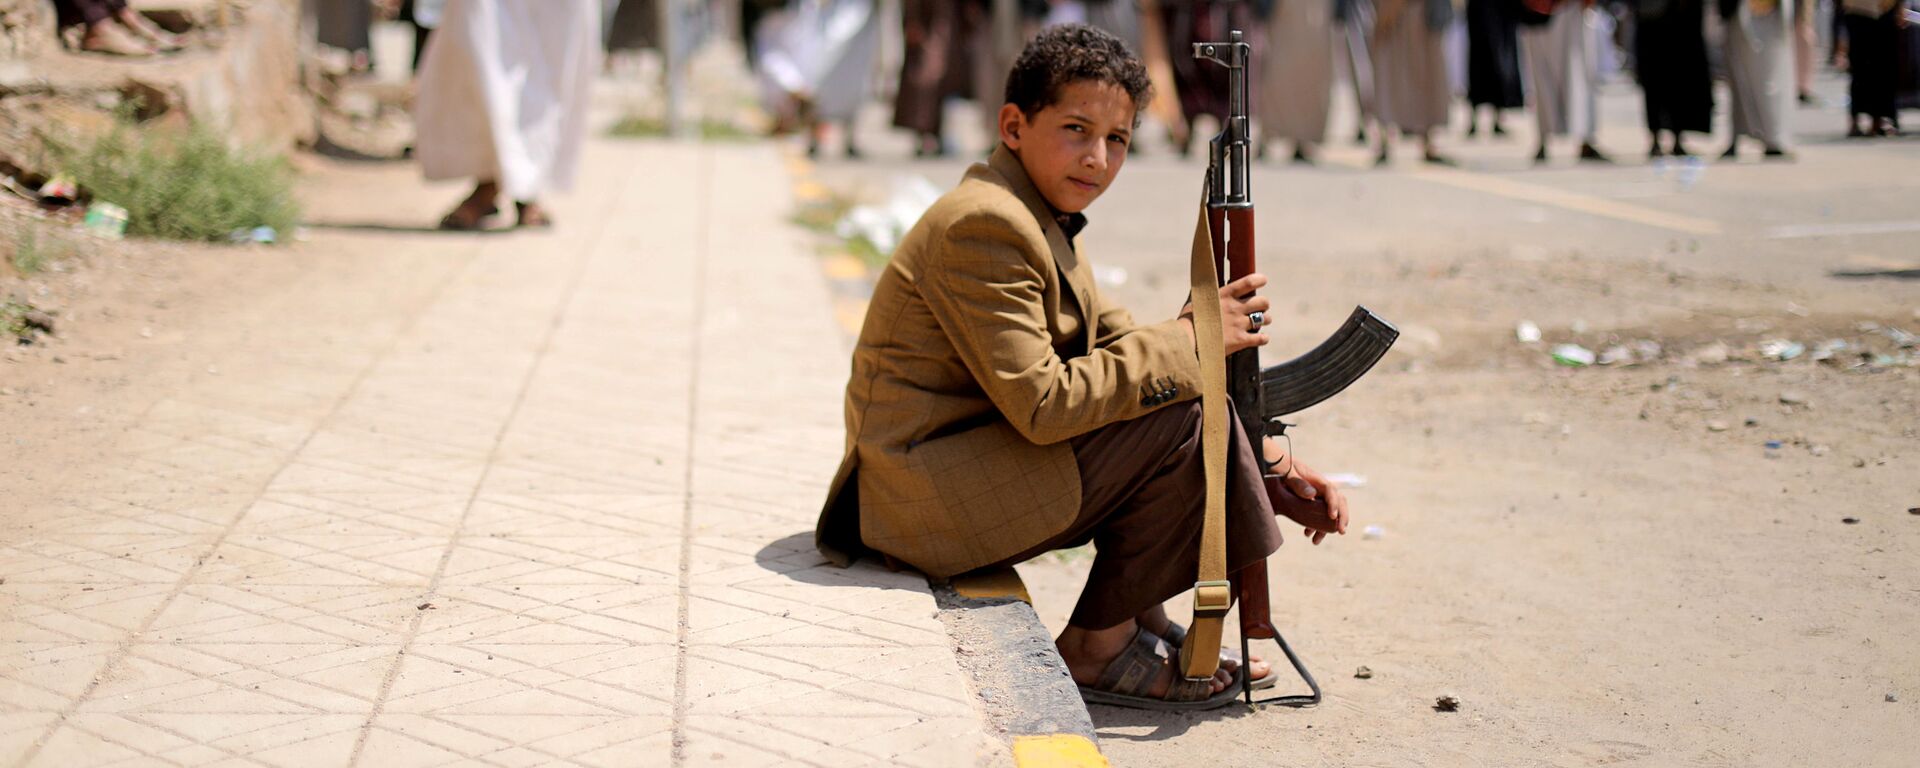 Garoto segura rifle durante ato do movimento houthi na capital do Iêmen, Sanaa, 30 de agosto de 2020 (foto de arquivo) - Sputnik Brasil, 1920, 09.02.2021